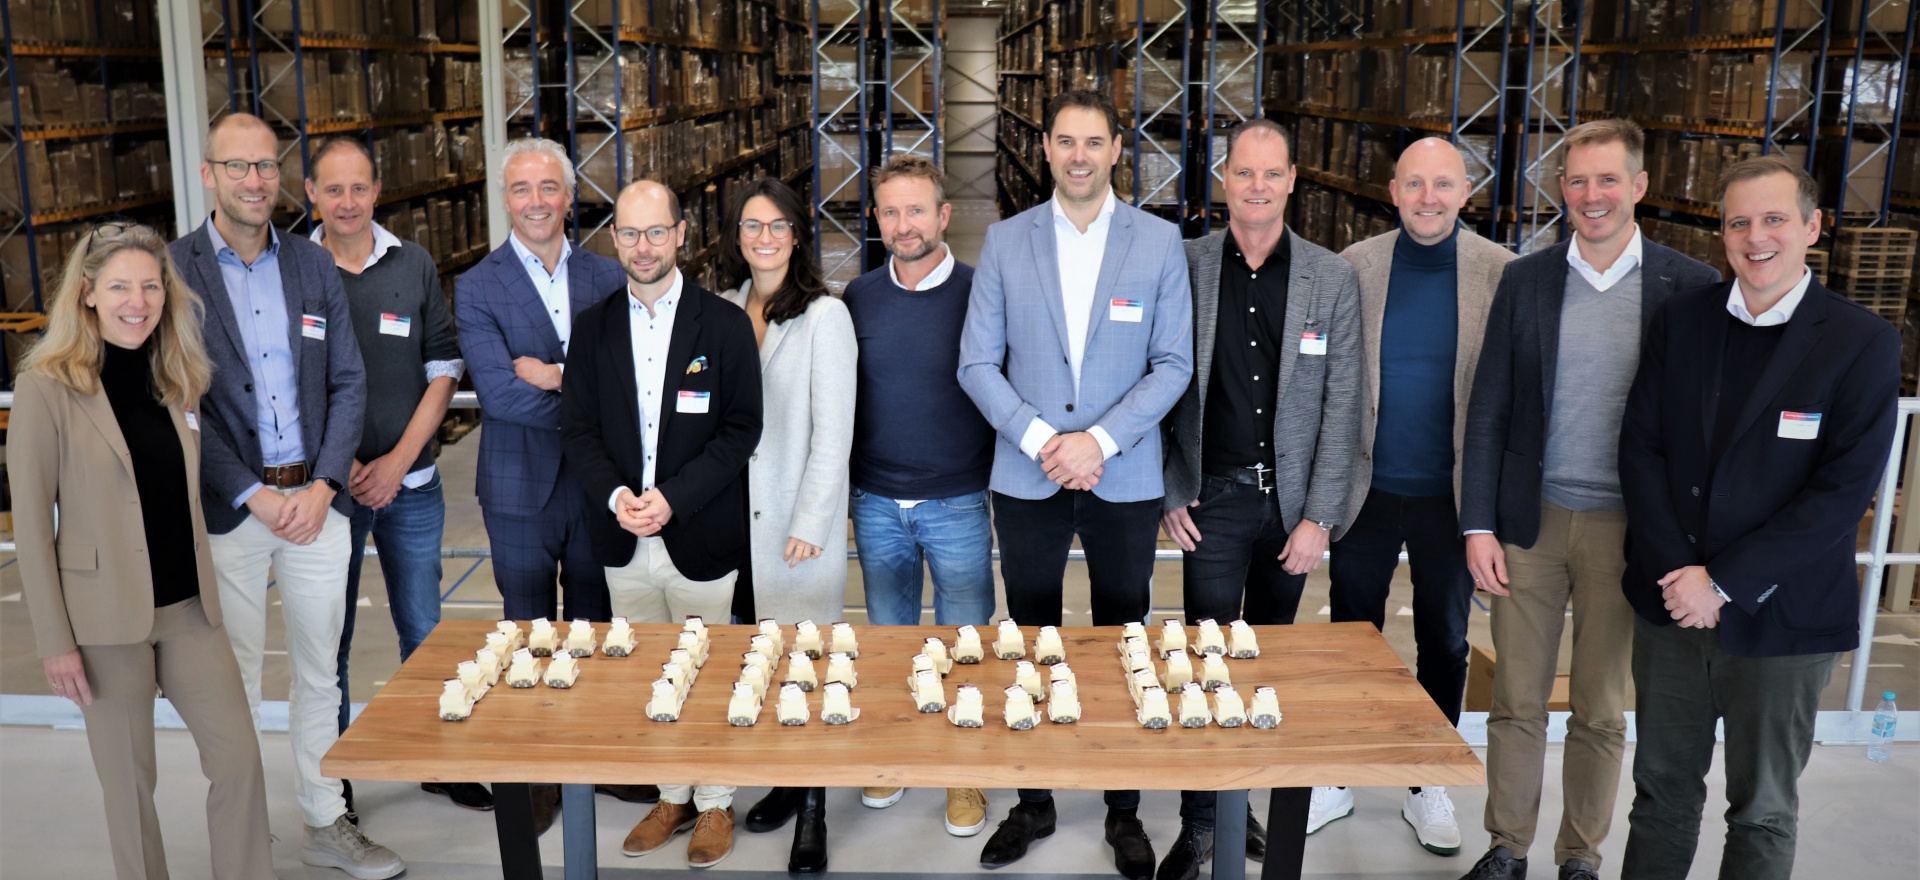 Gruppenfoto bei der Eröffnung des neuen FIEGE Logistikzentrums in Zaandam